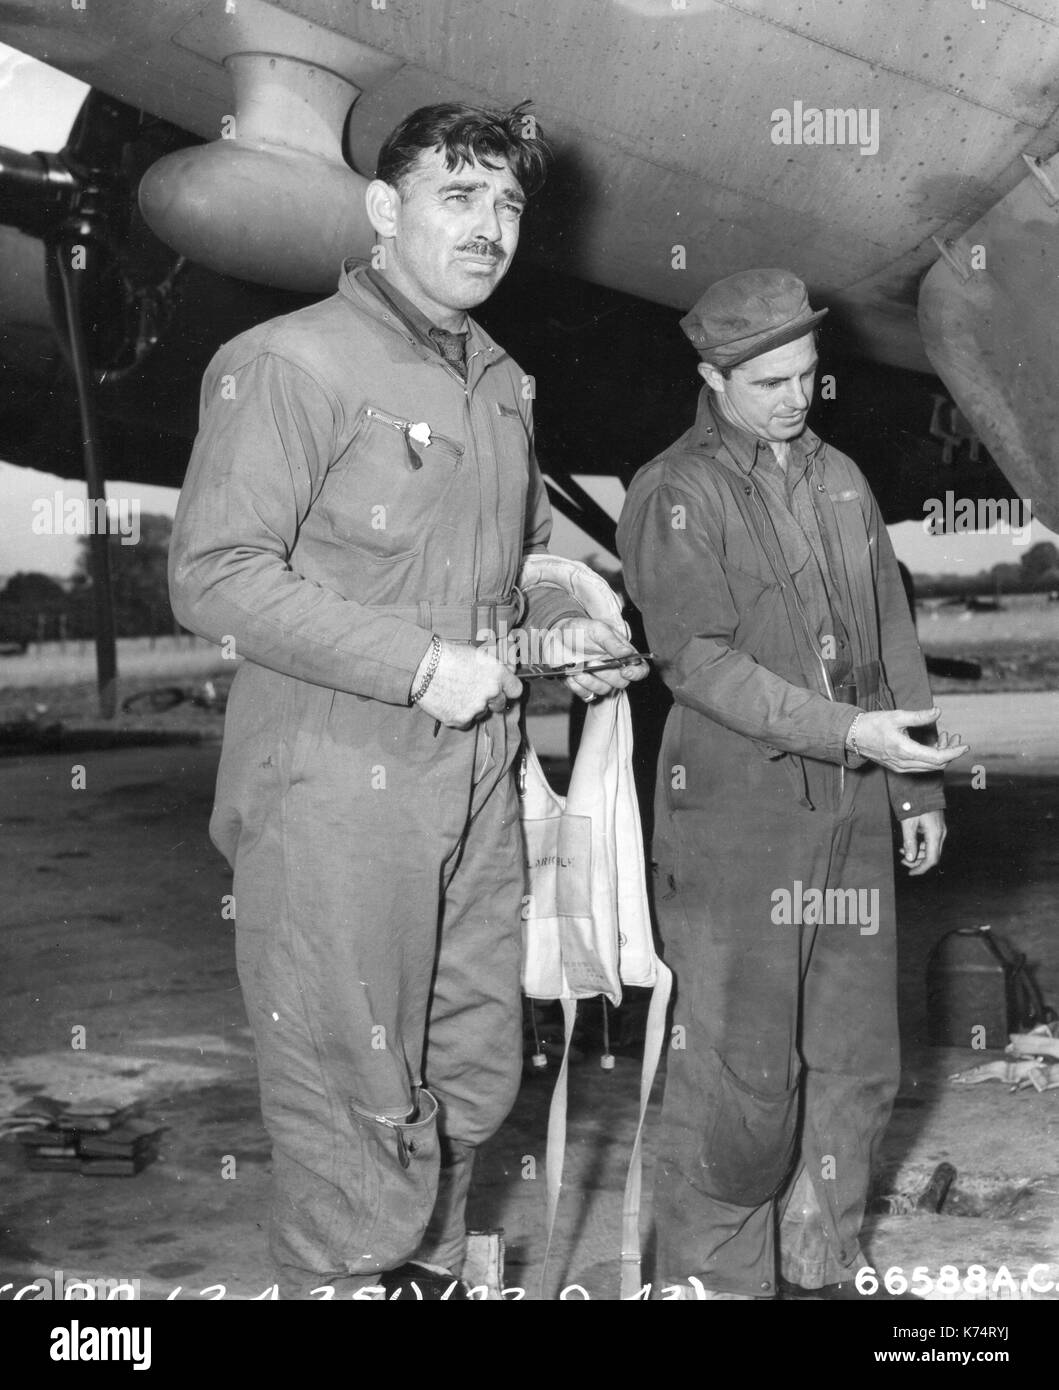 Il capitano Clark Gable (sinistra) dell'351a gruppo di bomba, mostrato dopo il ritorno da una missione di bombardamento su territorio nazista, Inghilterra, 23/09/1943 Foto Stock